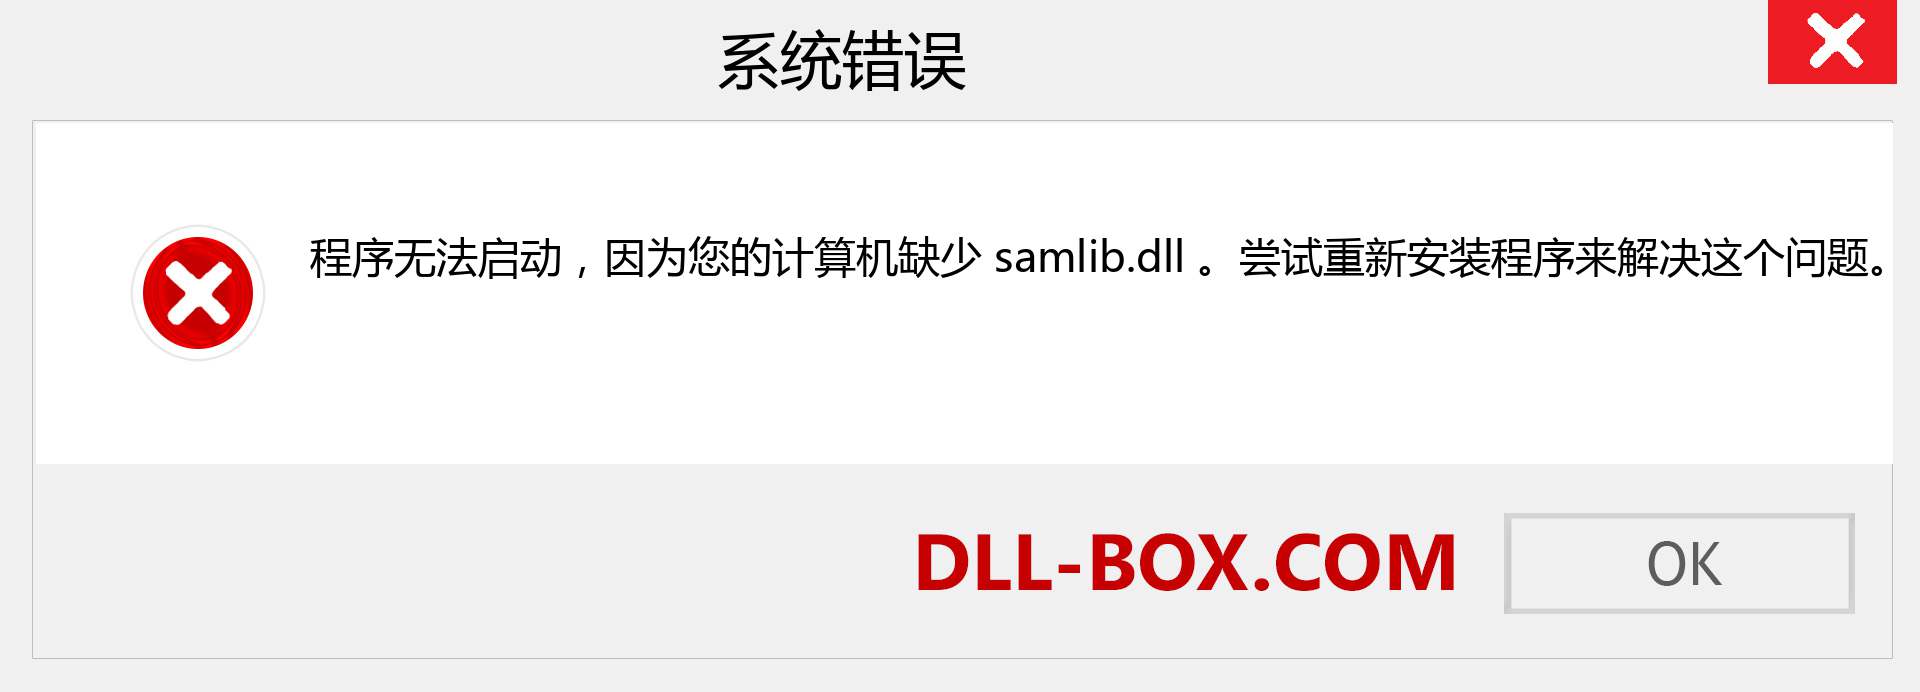 samlib.dll 文件丢失？。 适用于 Windows 7、8、10 的下载 - 修复 Windows、照片、图像上的 samlib dll 丢失错误